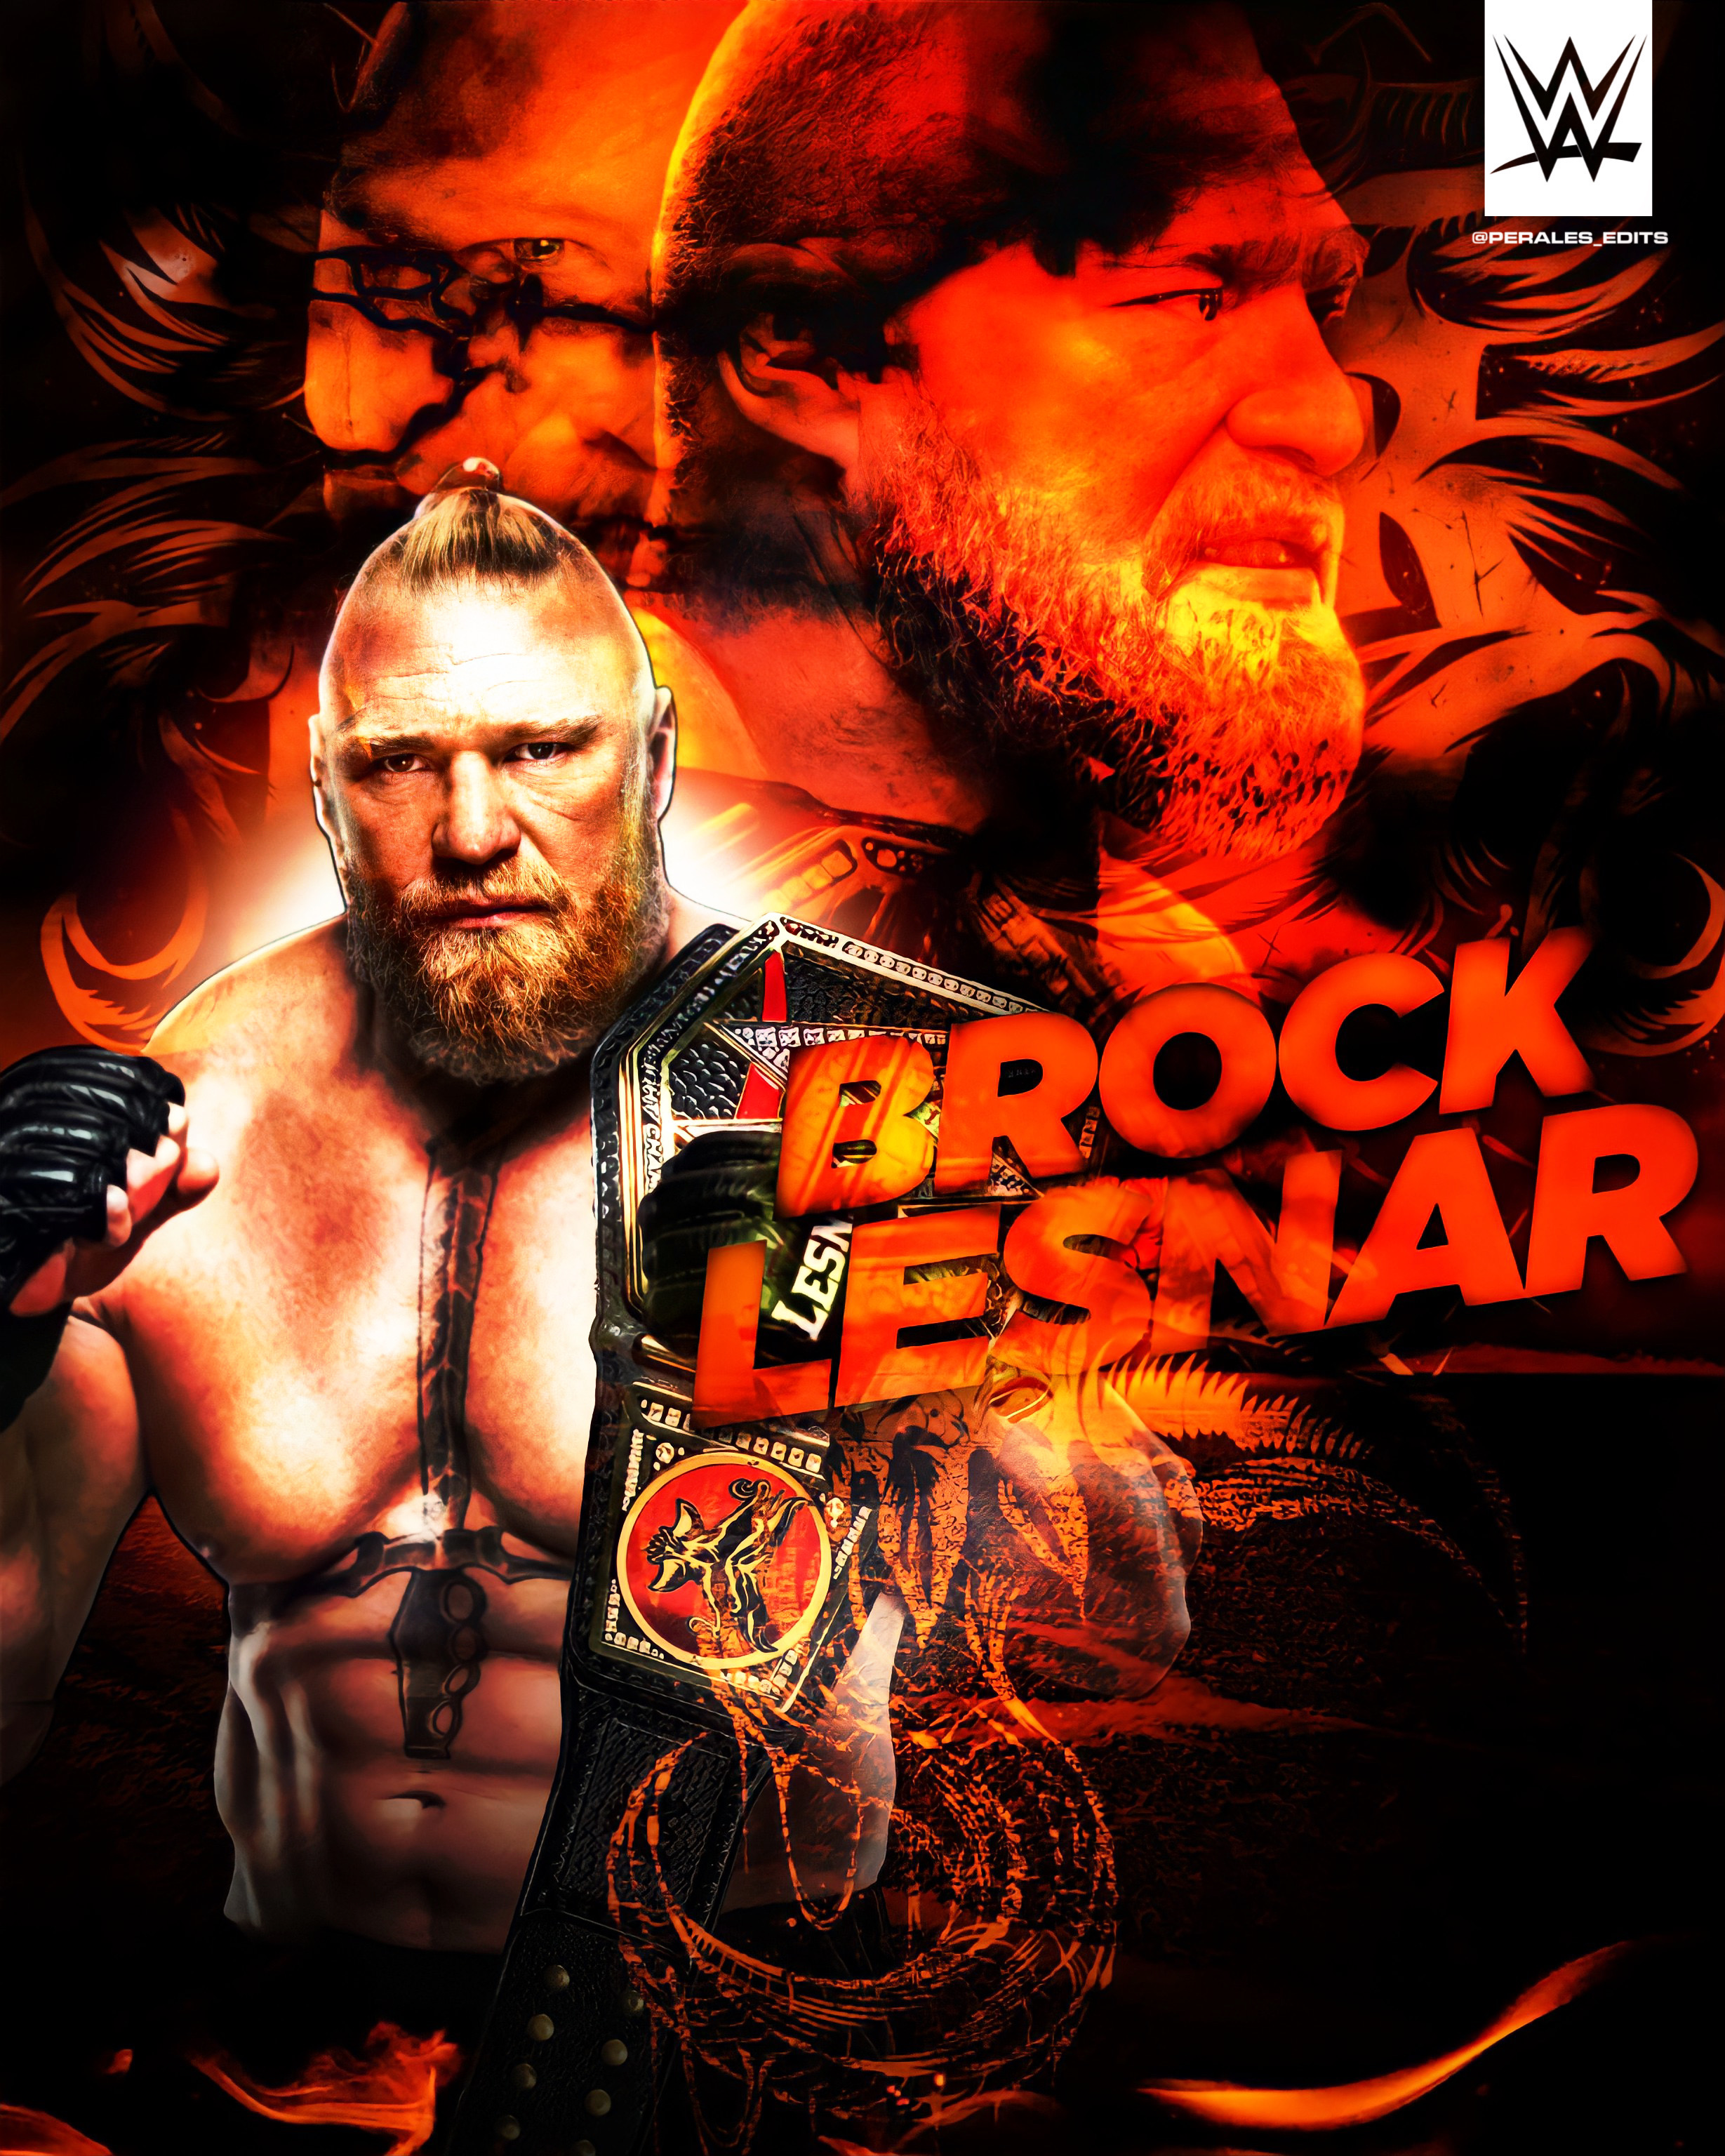 29+] WWE Brock Lesnar Wallpapers - WallpaperSafari